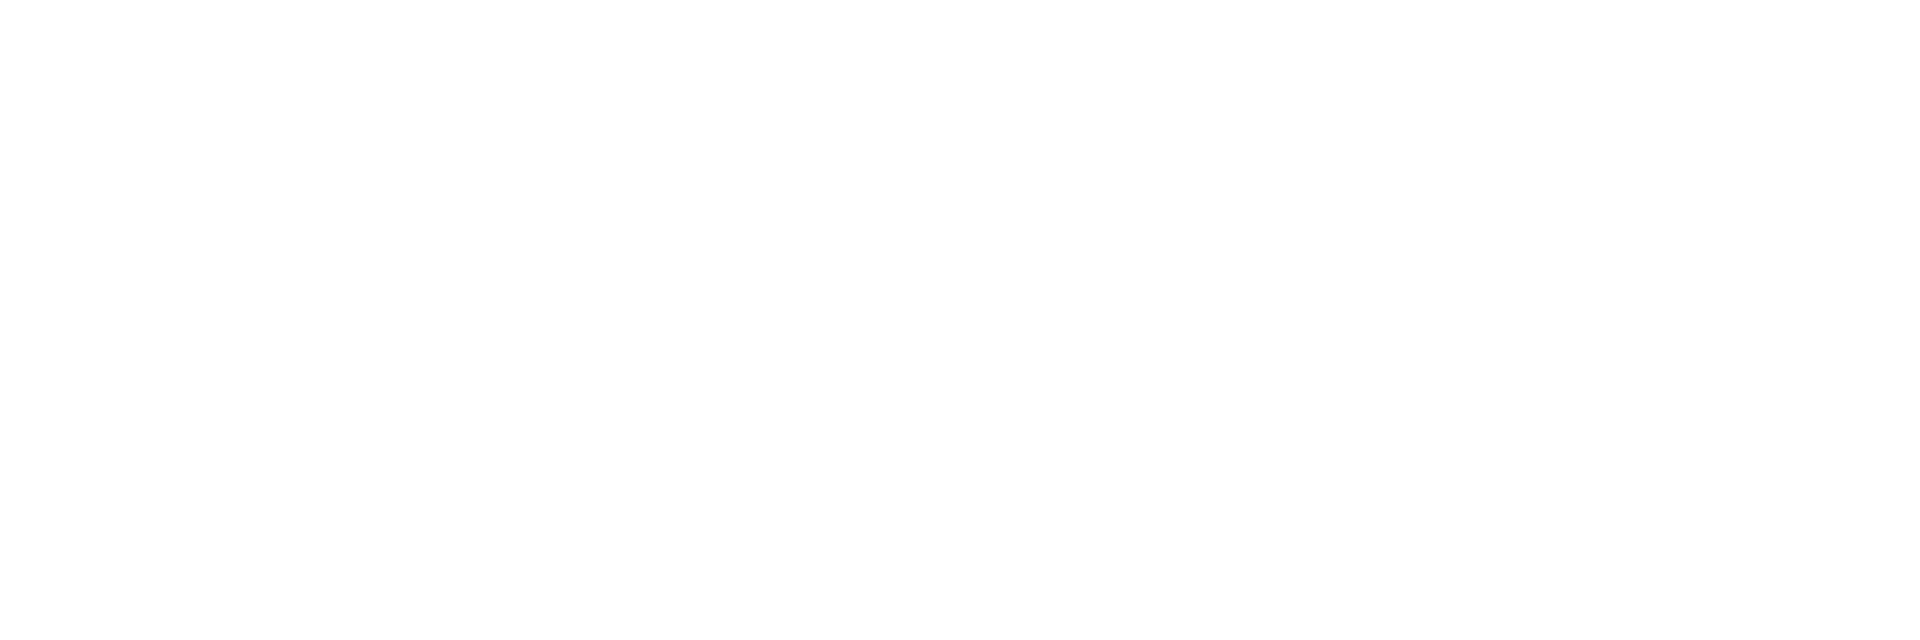 baby growth式赤ちゃん整体ロゴ